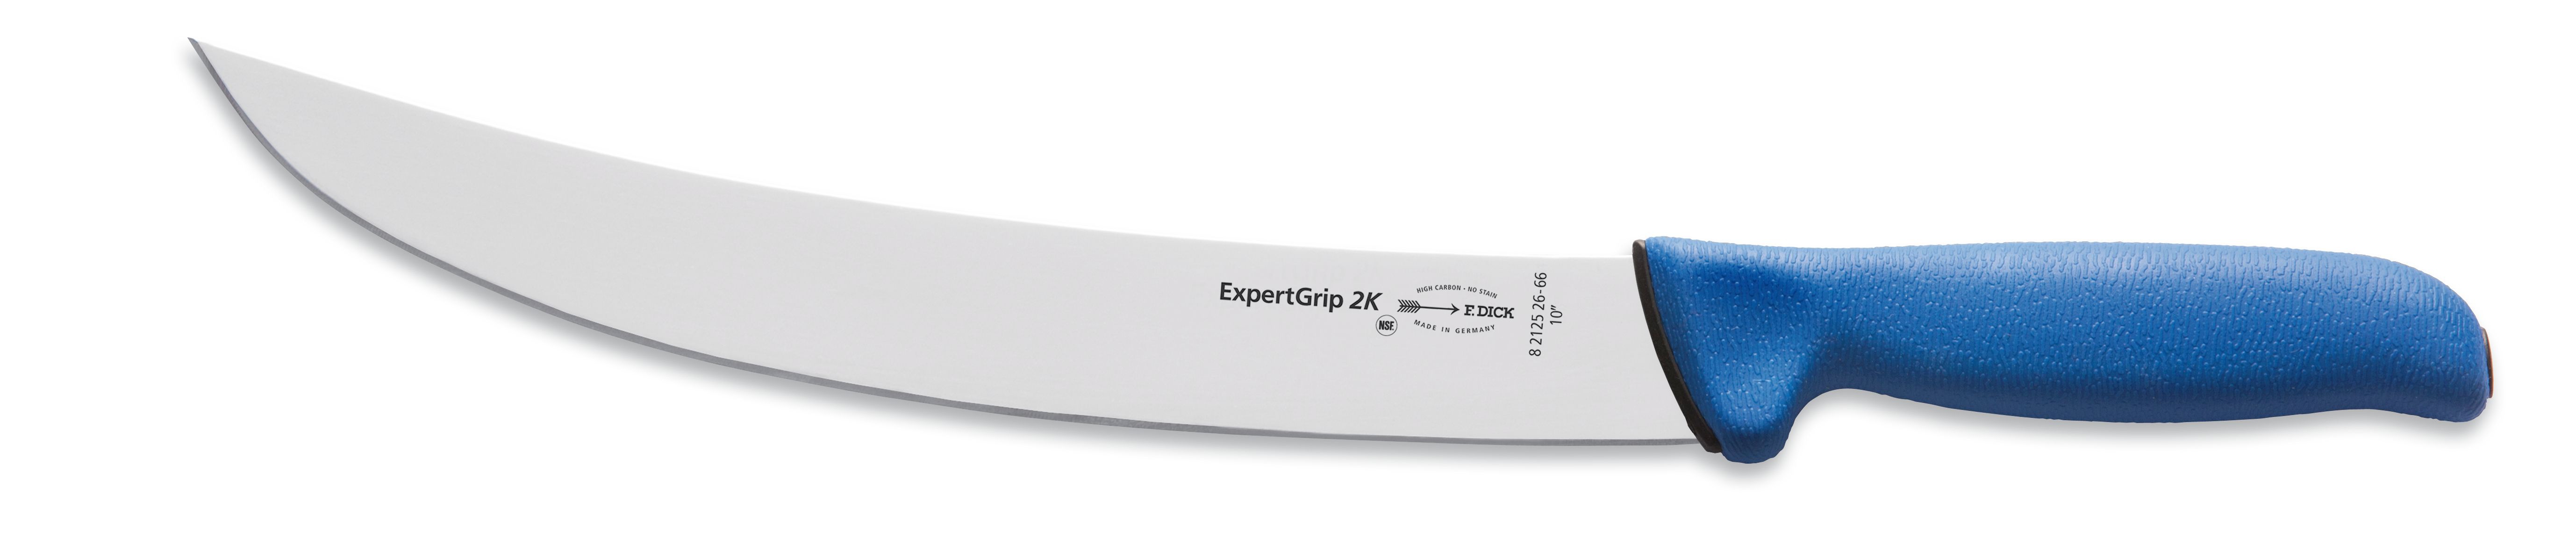 Blokový nůž v délce 26 cm ze série ExpertGrip modrý